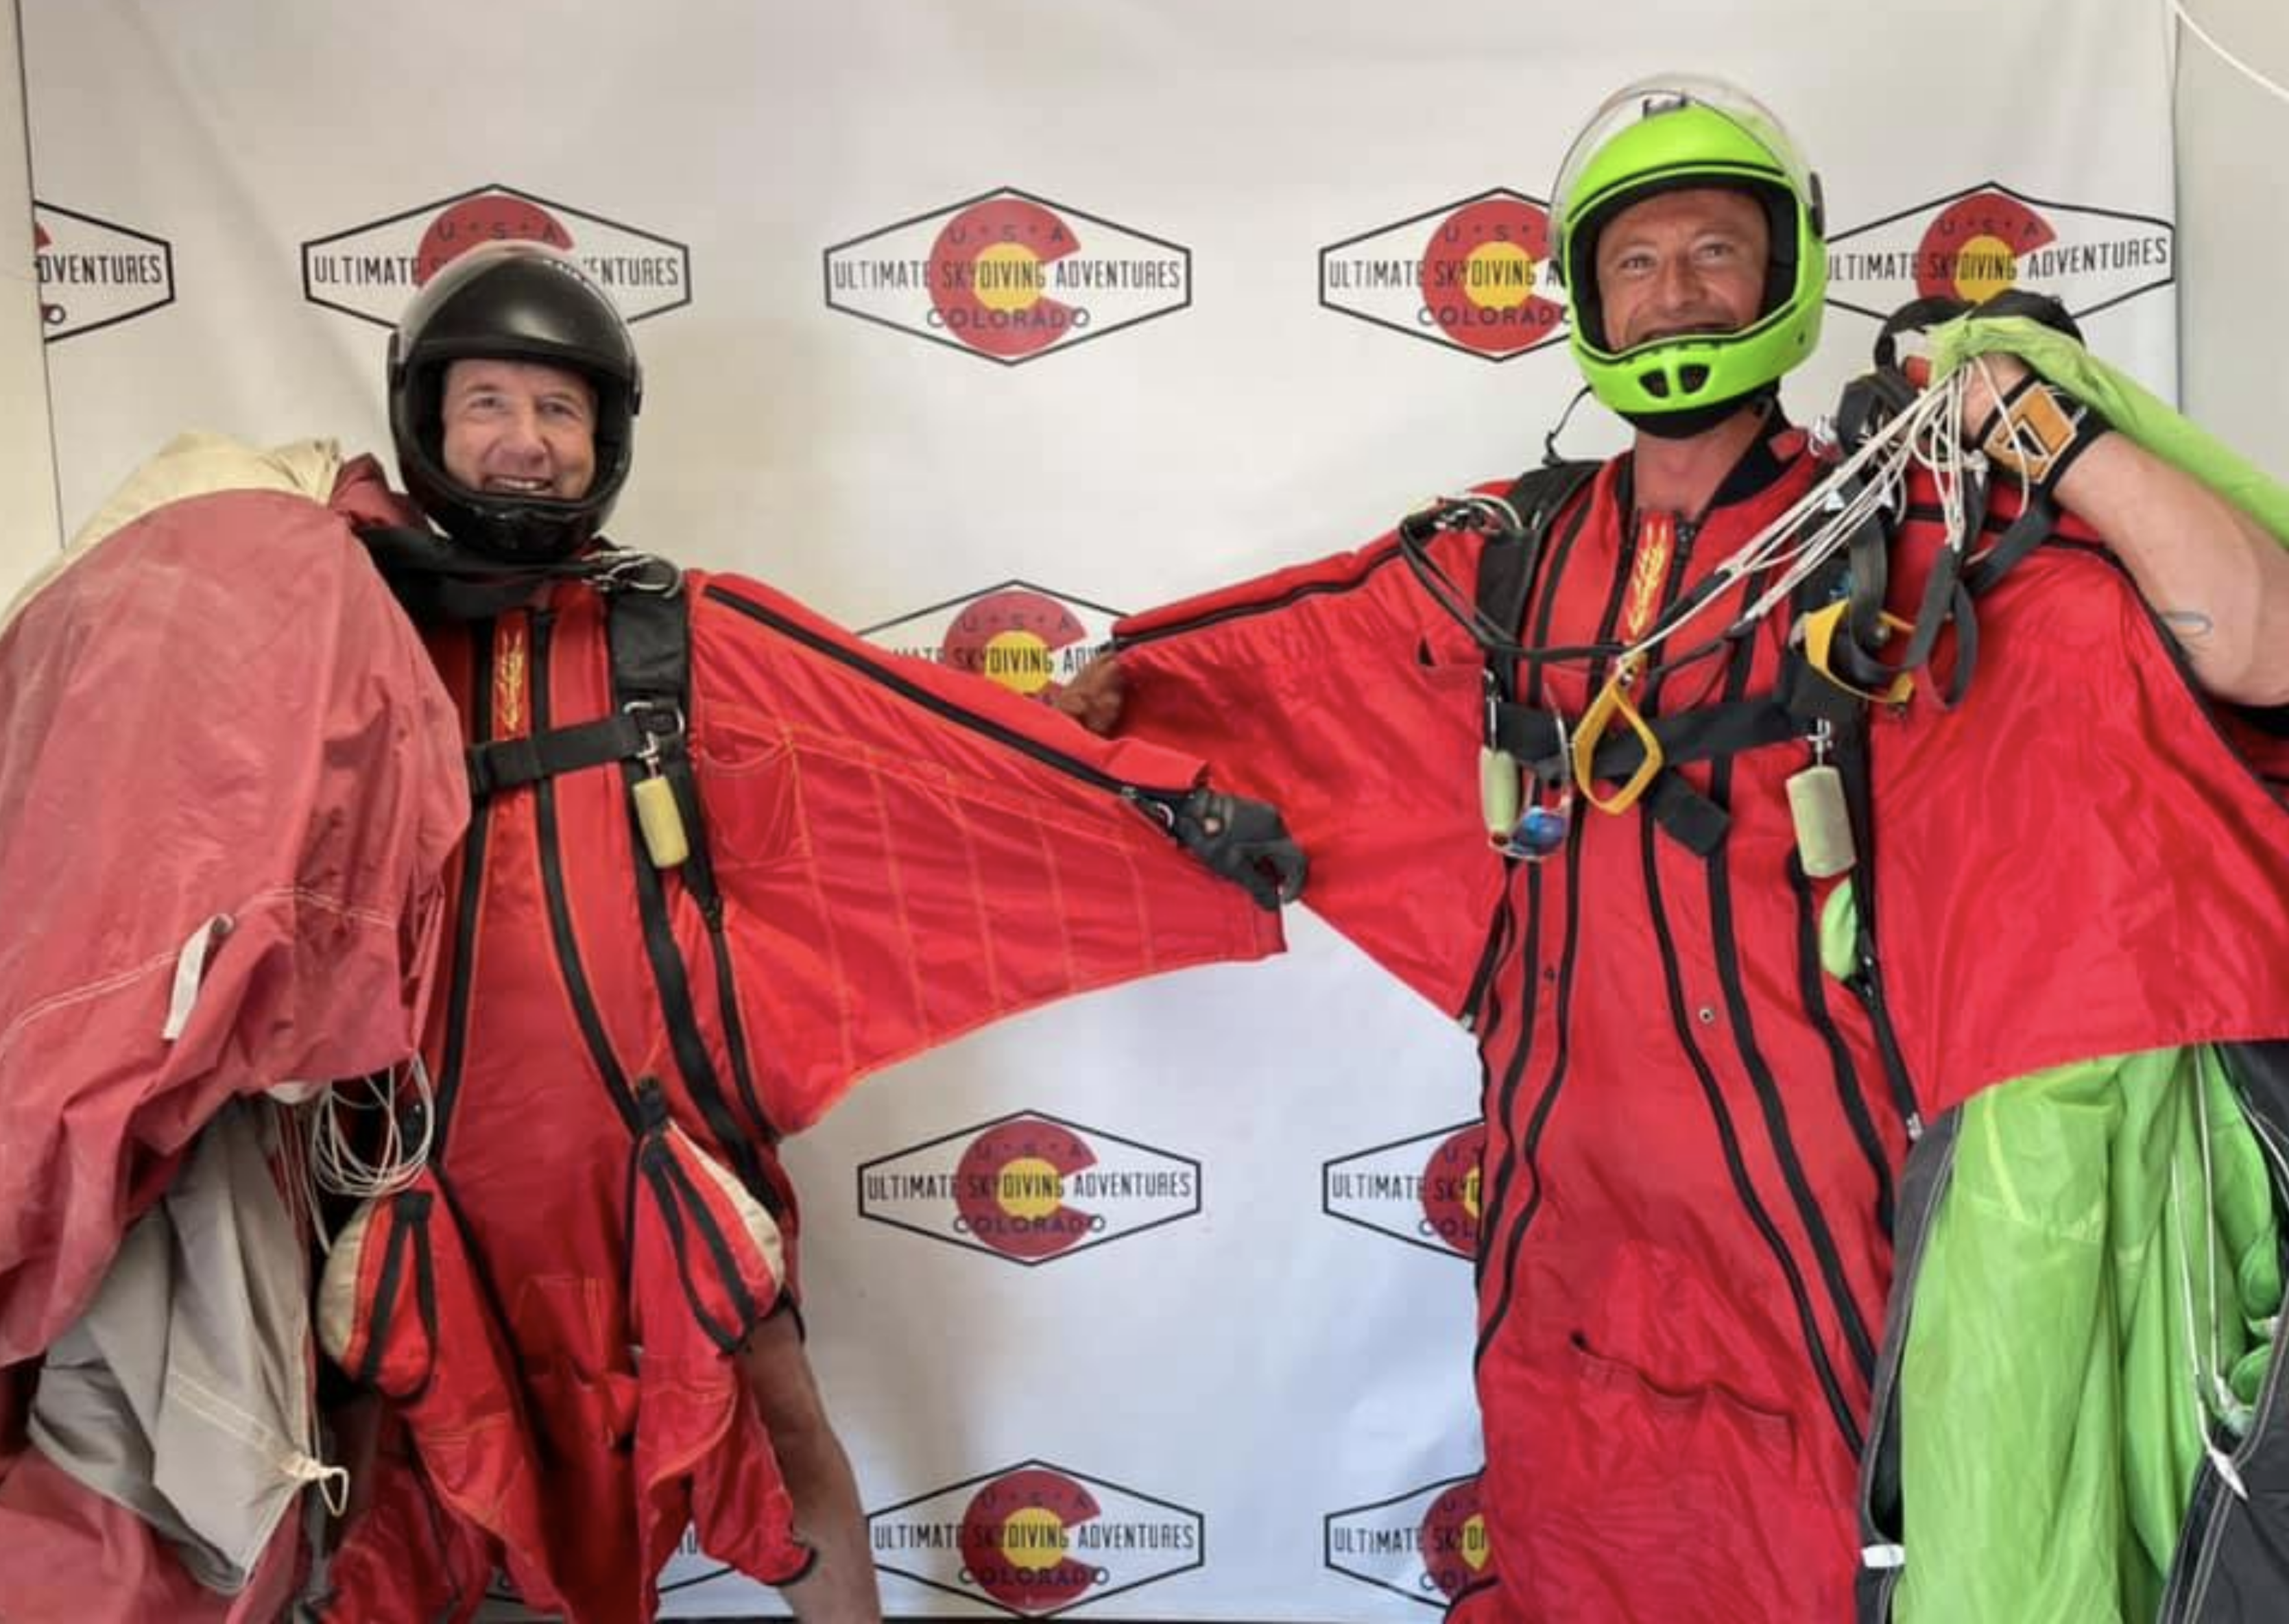 wingsuit skydiving at ultimate skydiving adventures